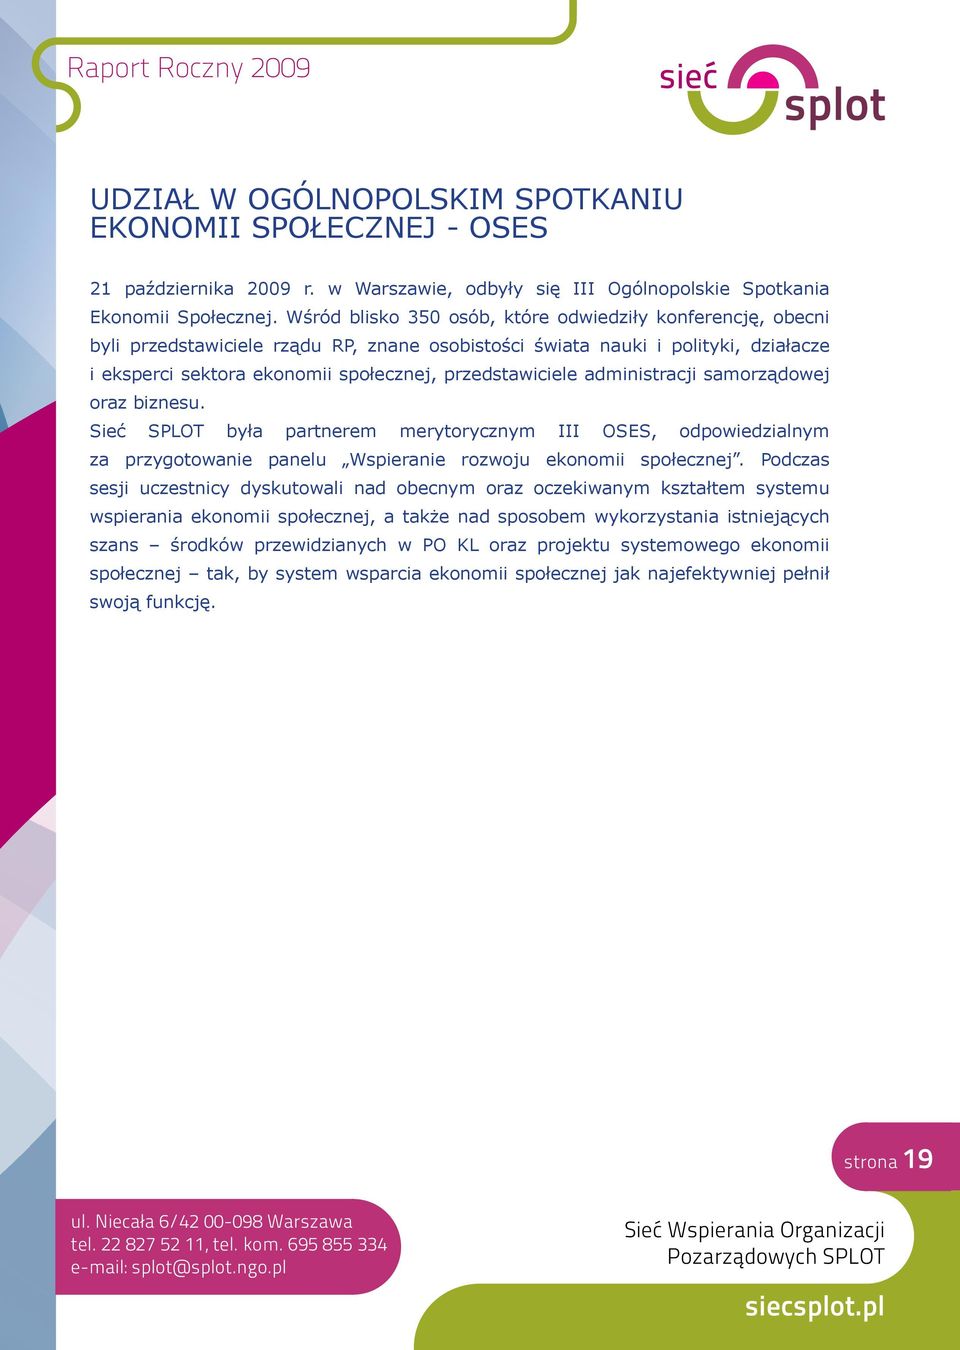 administracji samorządowej oraz biznesu. Sieć SPLOT była partnerem merytorycznym III OSES, odpowiedzialnym za przygotowanie panelu Wspieranie rozwoju ekonomii społecznej.